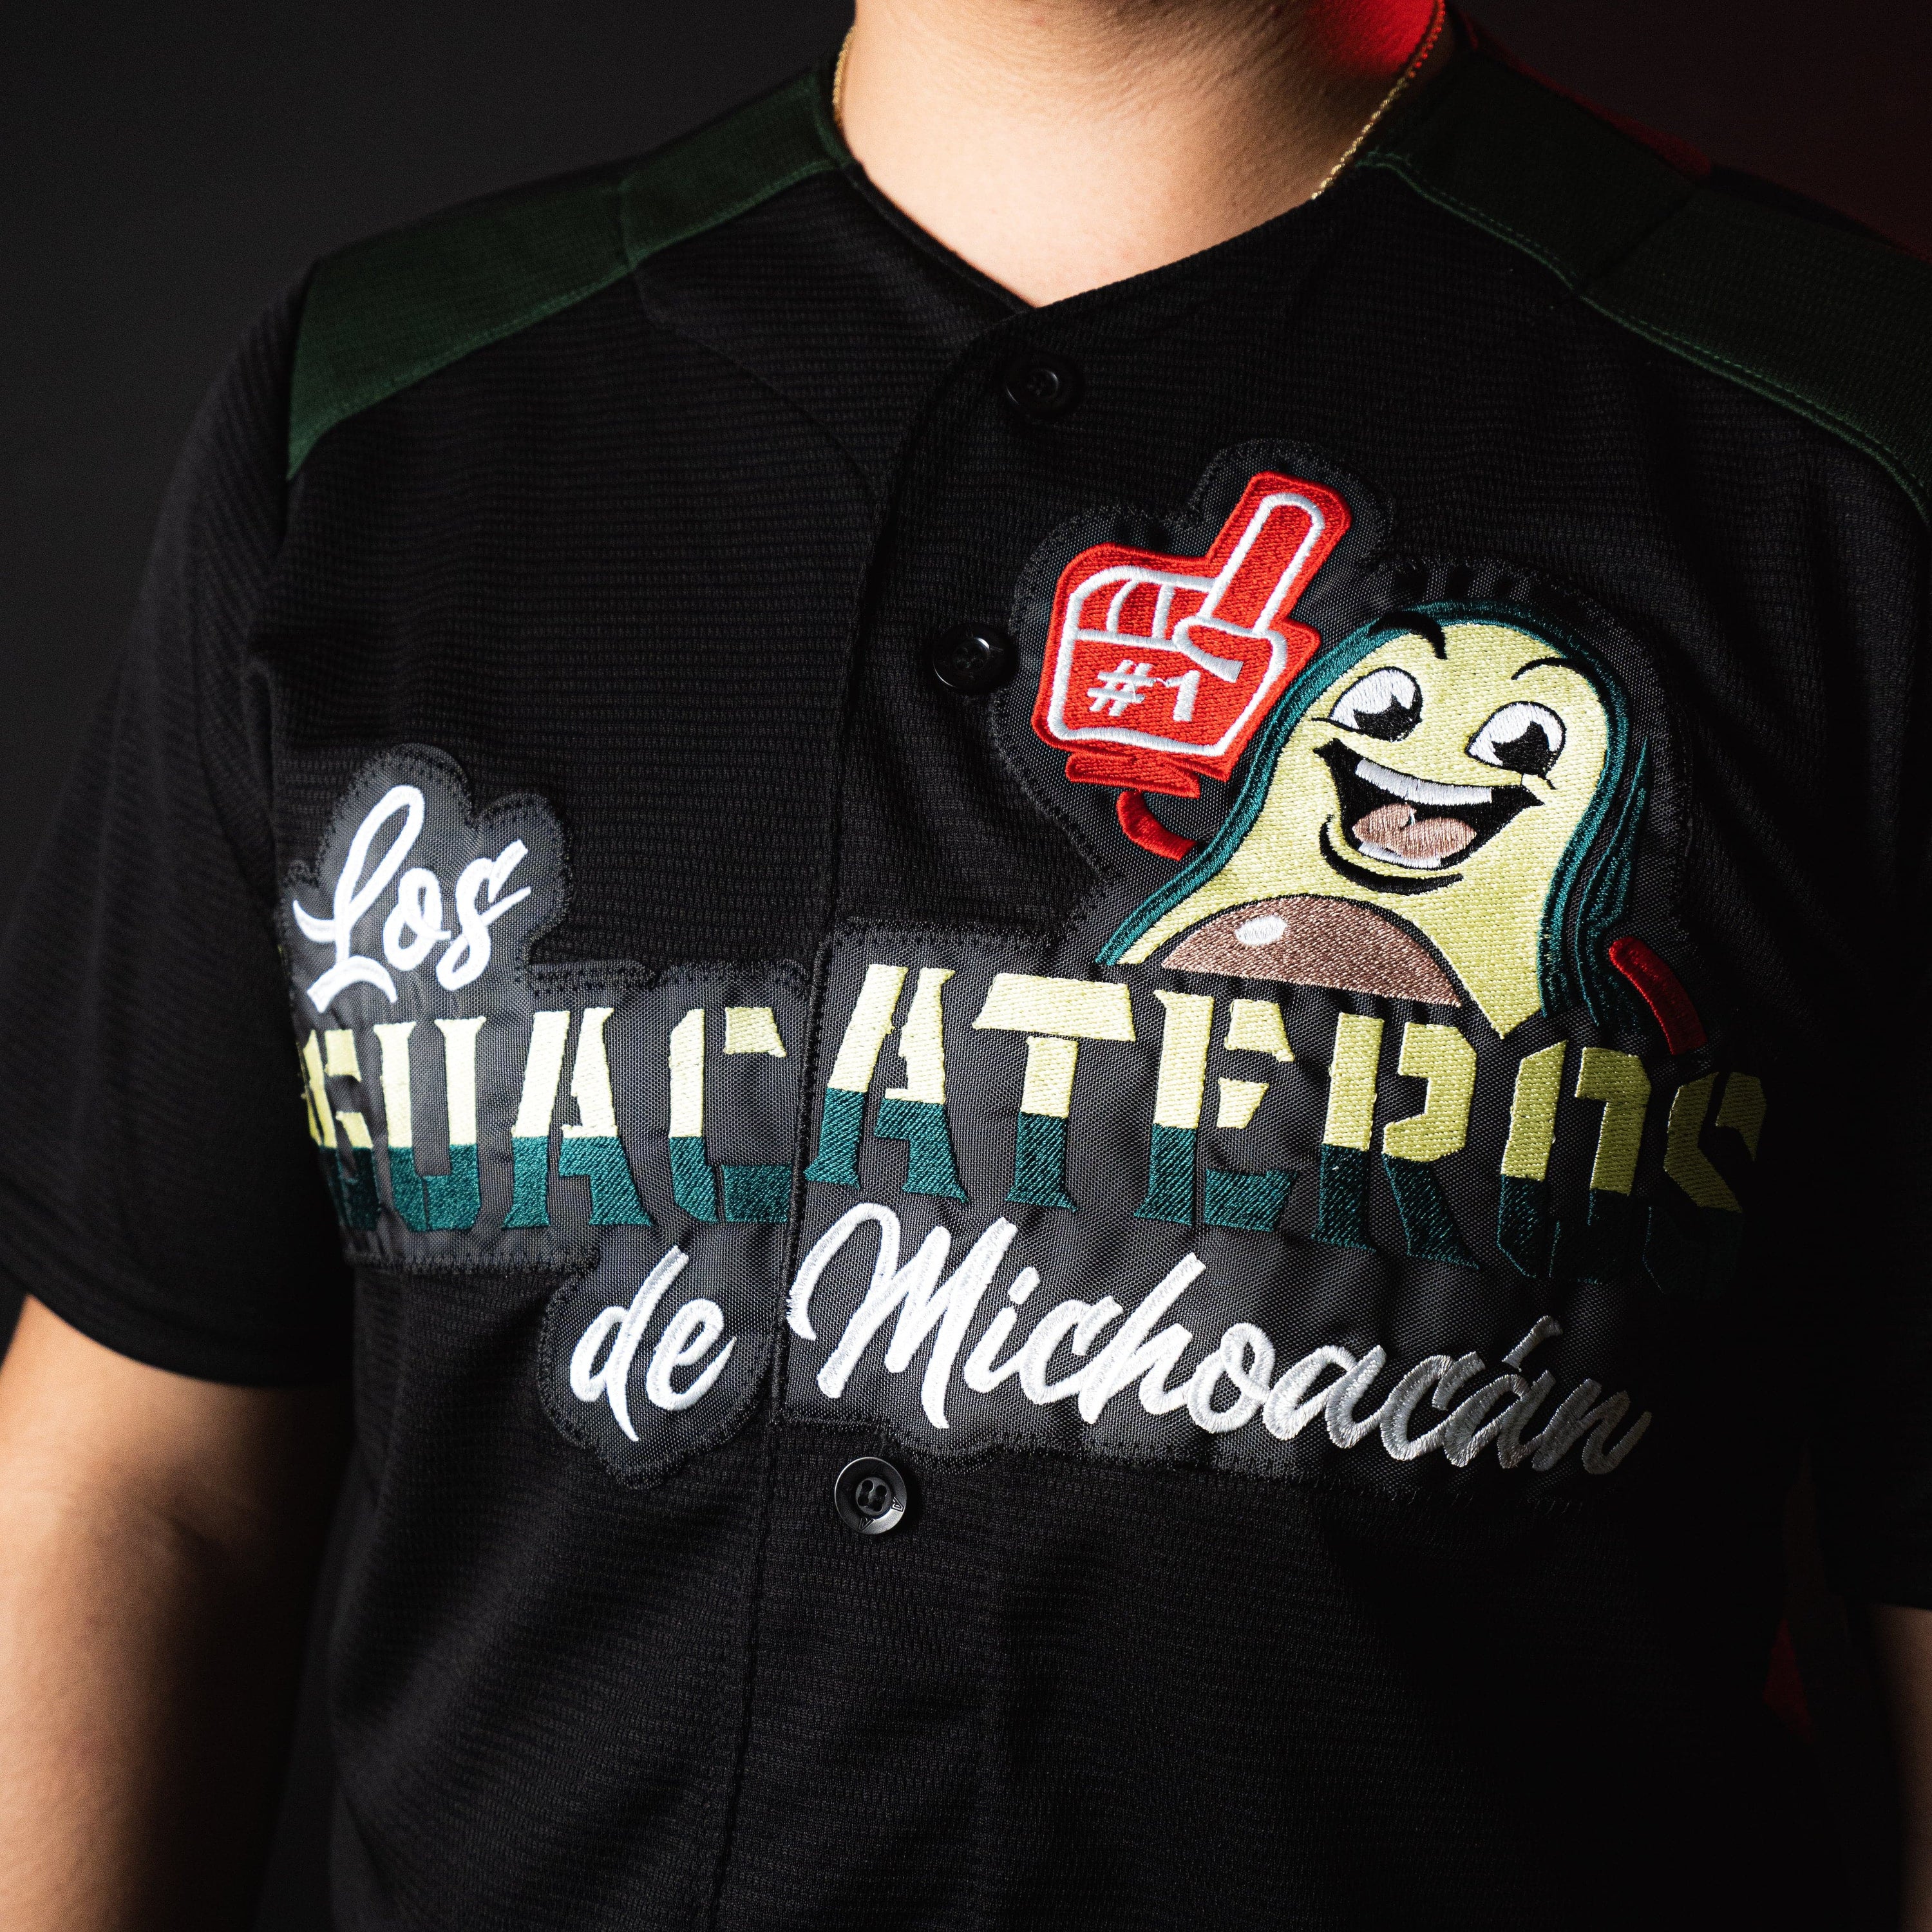 Los Aguacateros de Michoacan Custom Baseball Jerseys